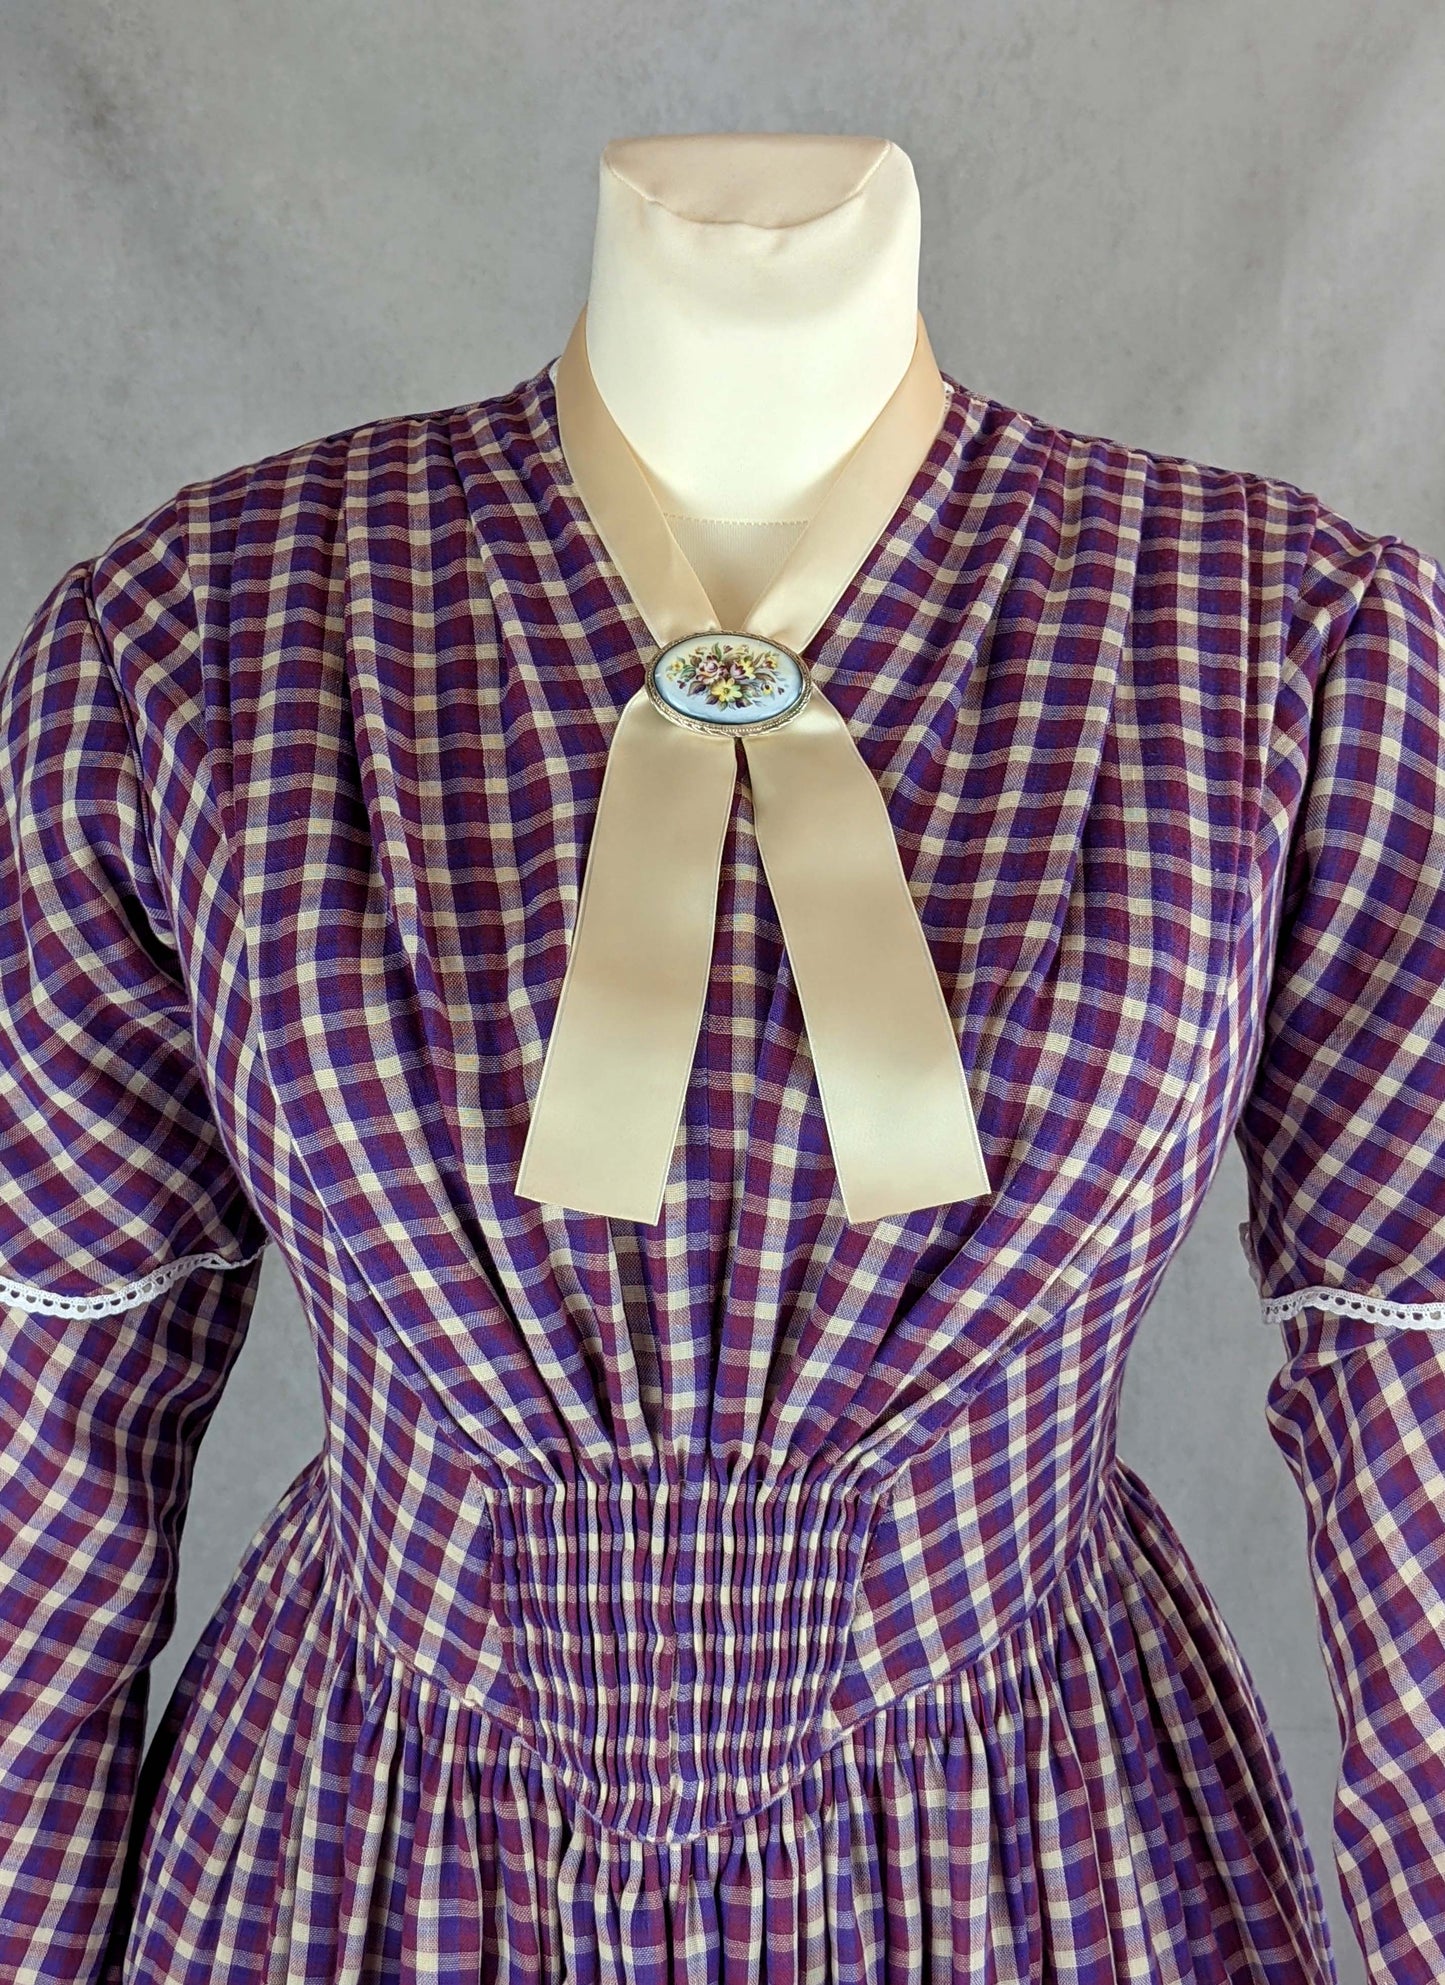 #0421 Day Dress 1840-45 Sewing Pattern Size US 8-30 (EU 34-56) Printed Pattern